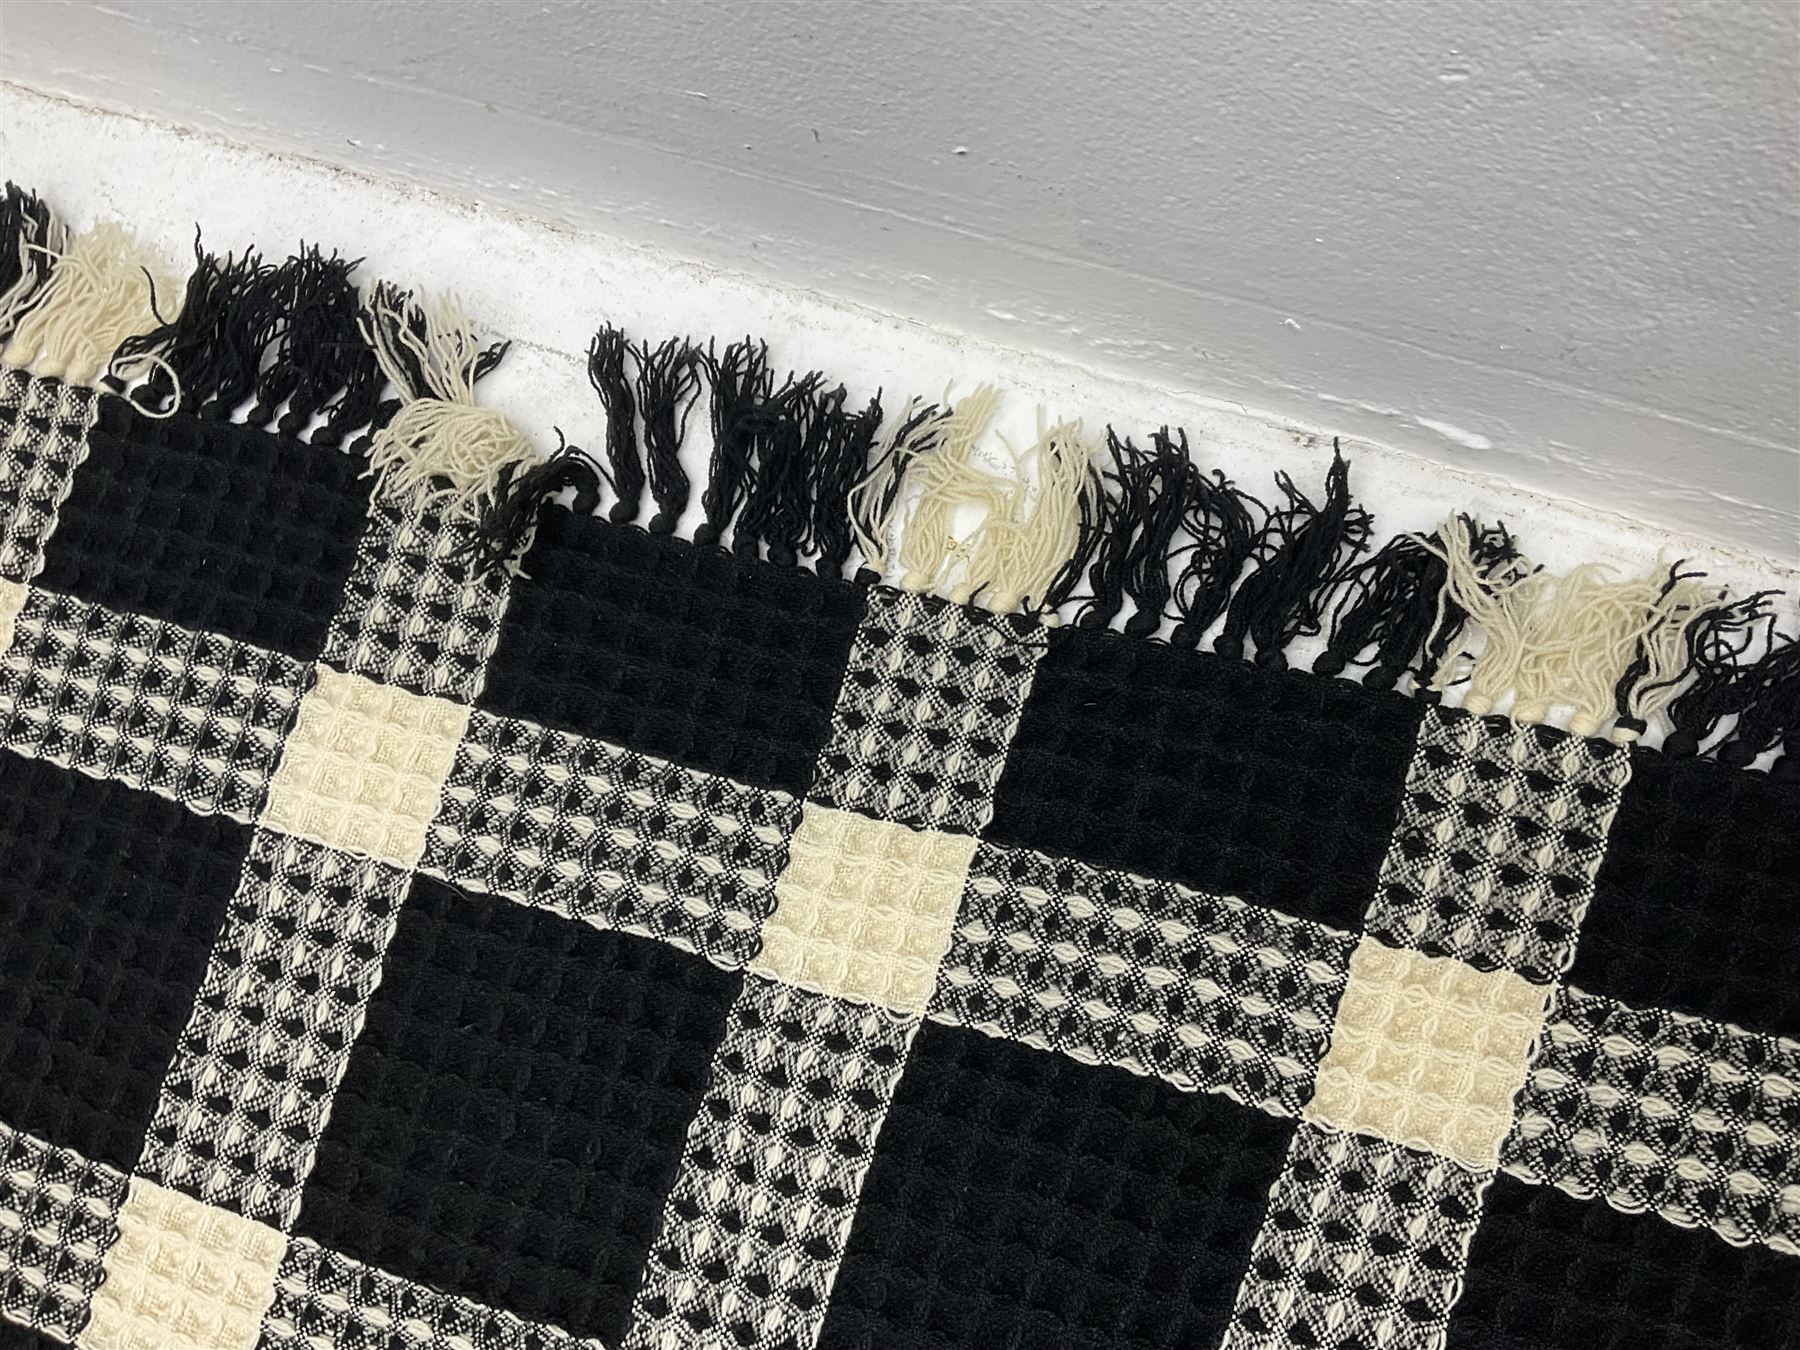 Welsh woven woollen honeycomb bedspread - Image 4 of 9